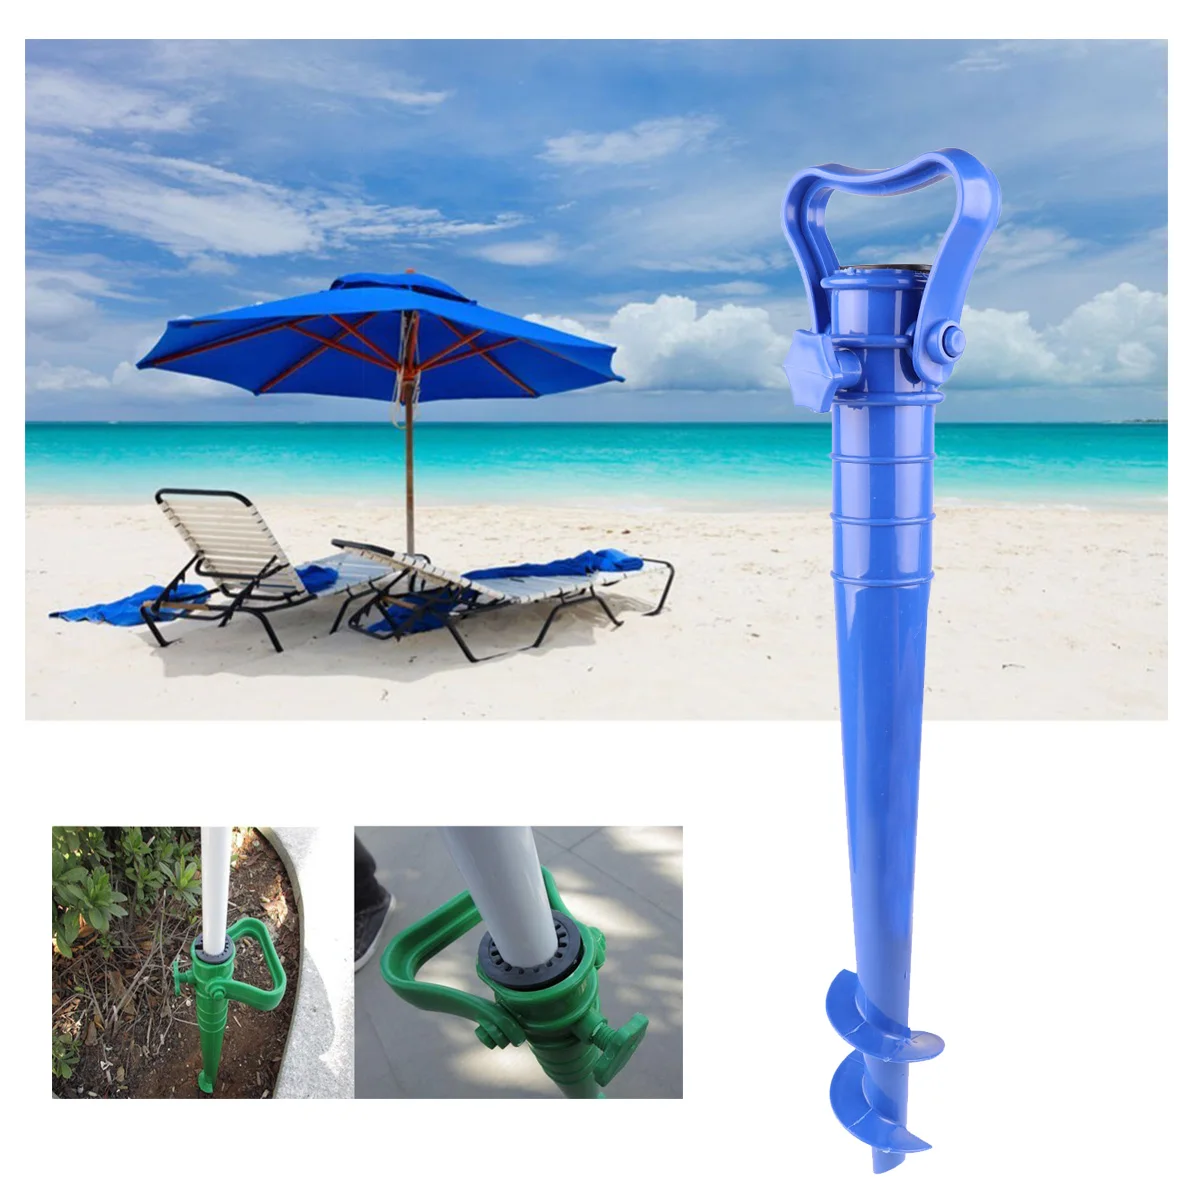 Регулируемый сверхпрочный пластмассовый пляжный зонт песочный наземный якорь подставка шип шнек держатель для рыбалки полюс солнце пляж сад патио